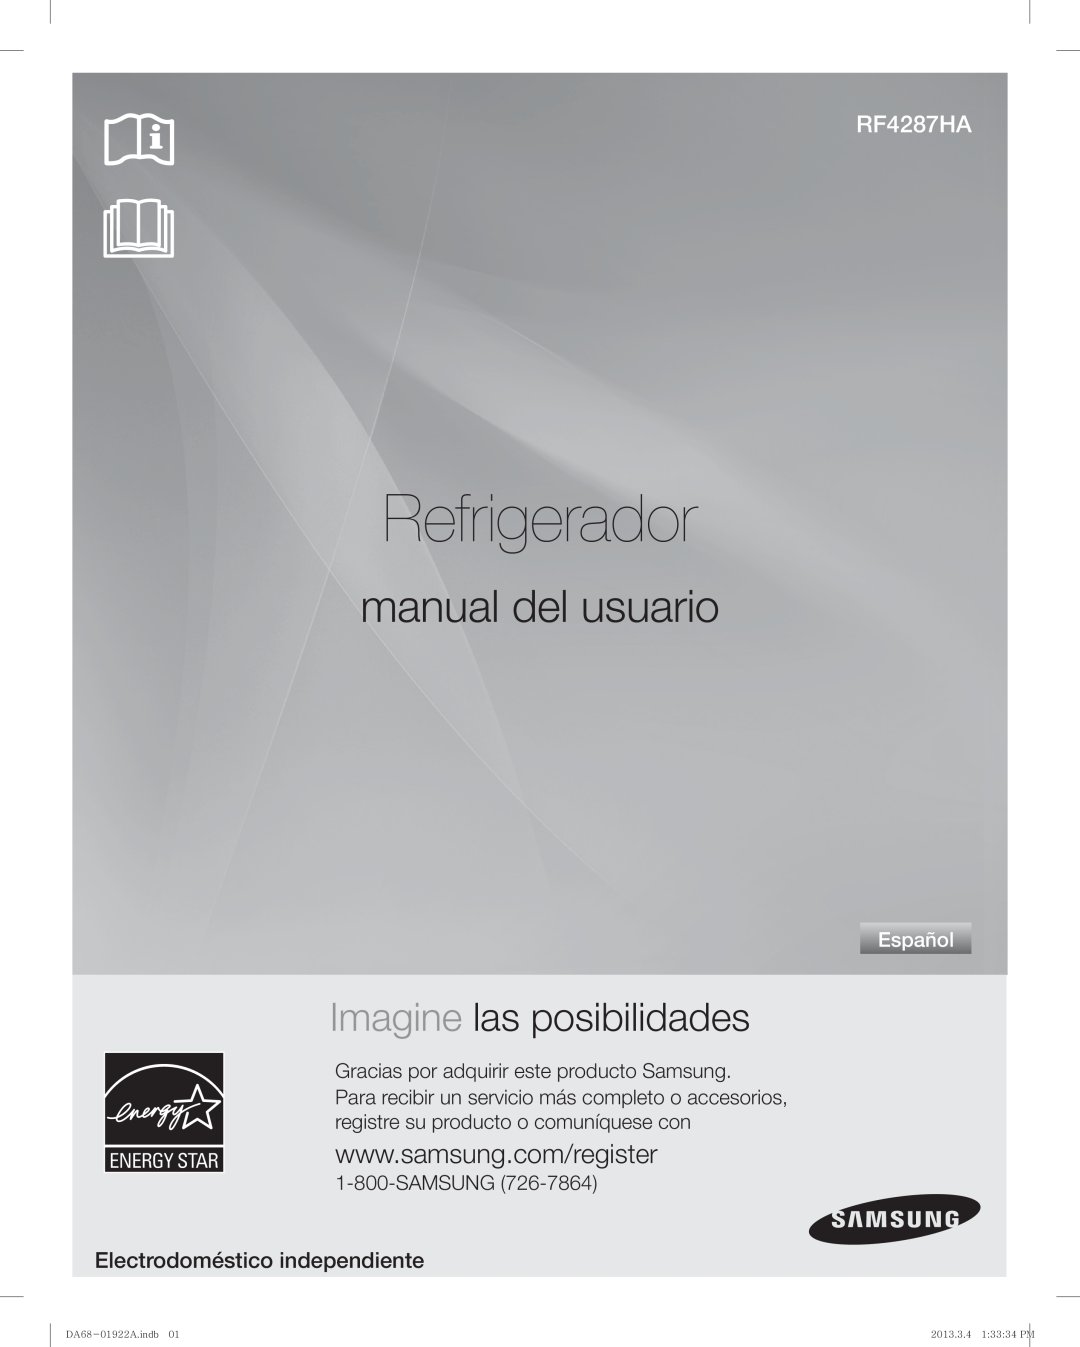 Samsung RF4287HABP Refrigerador, manual del usuario, Imagine las posibilidades, Electrodoméstico independiente, Español 